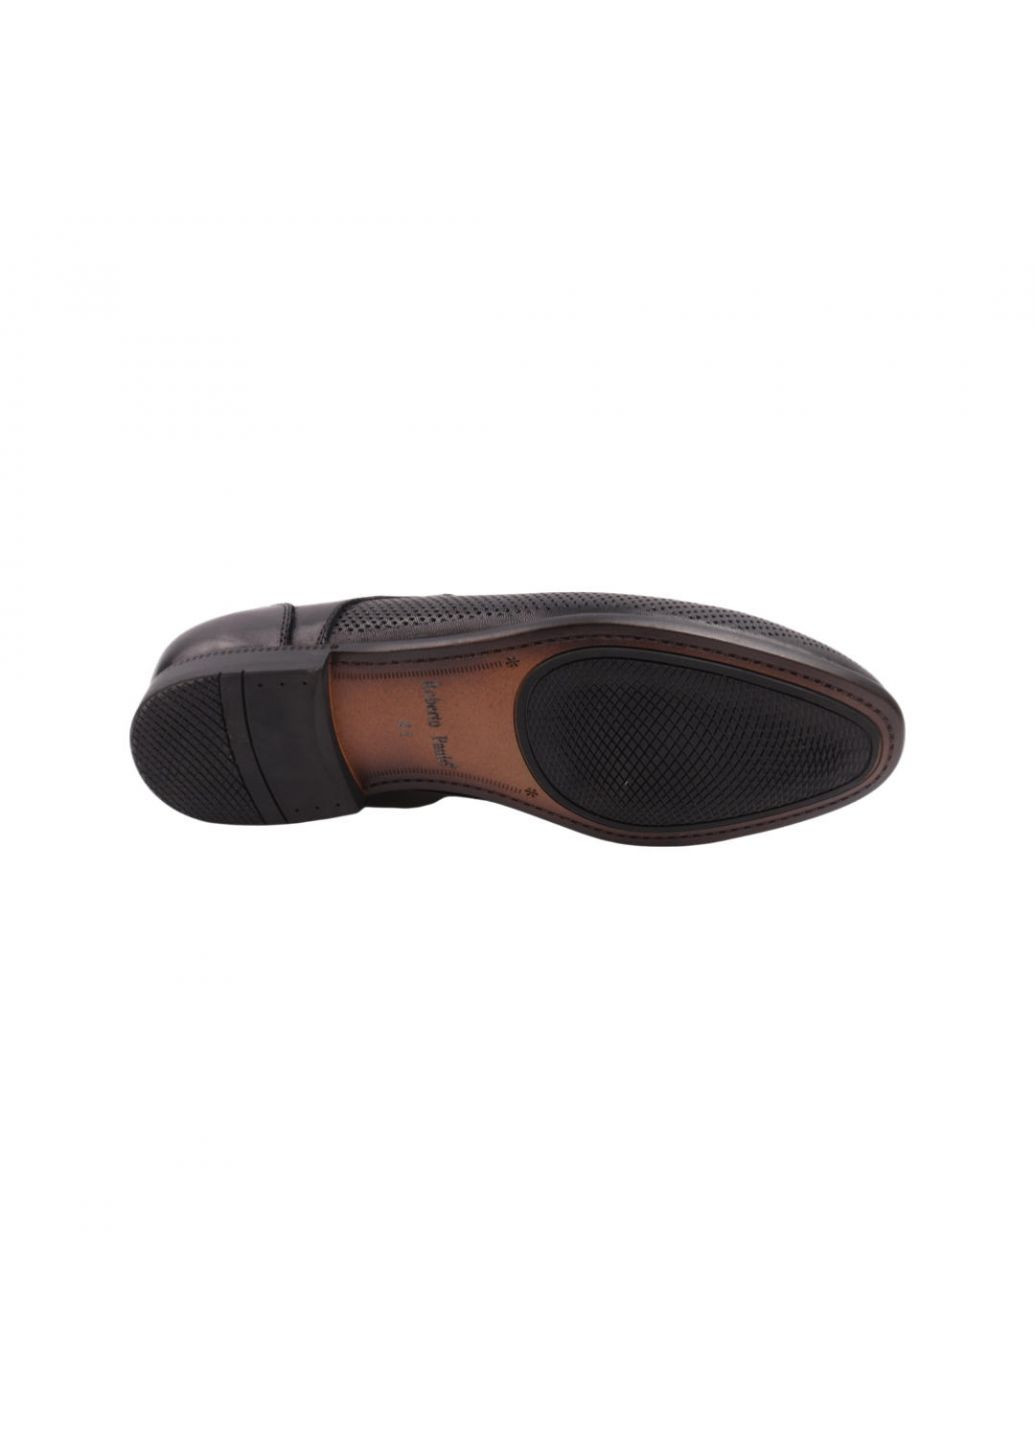 Черные туфли мужские черные натуральная кожа Roberto Paulo